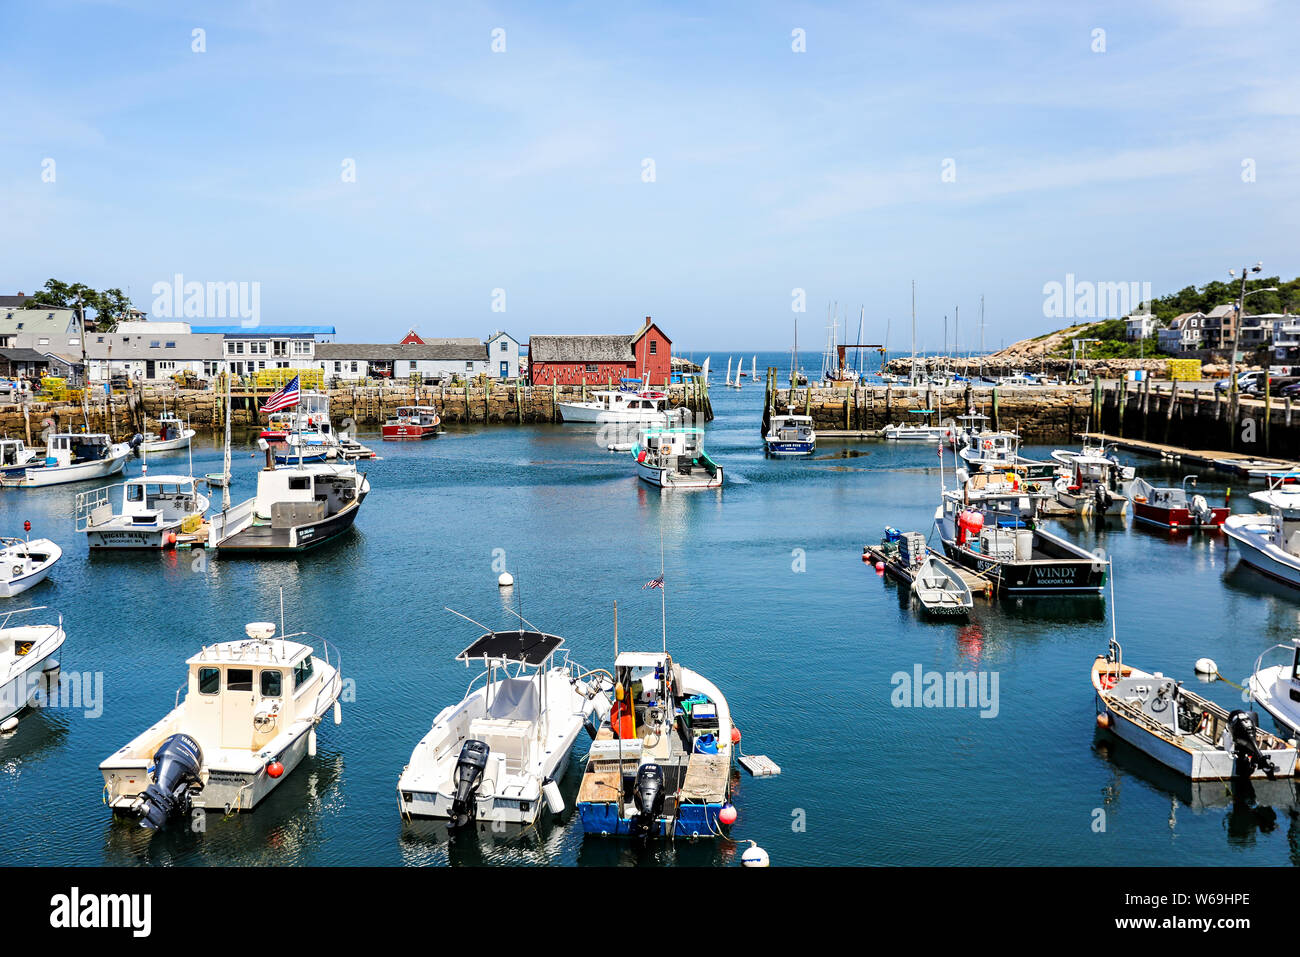 Vue sur la baie et la marina à Rockport, Massachusettes une ville portuaire typique de la Nouvelle-Angleterre. Banque D'Images